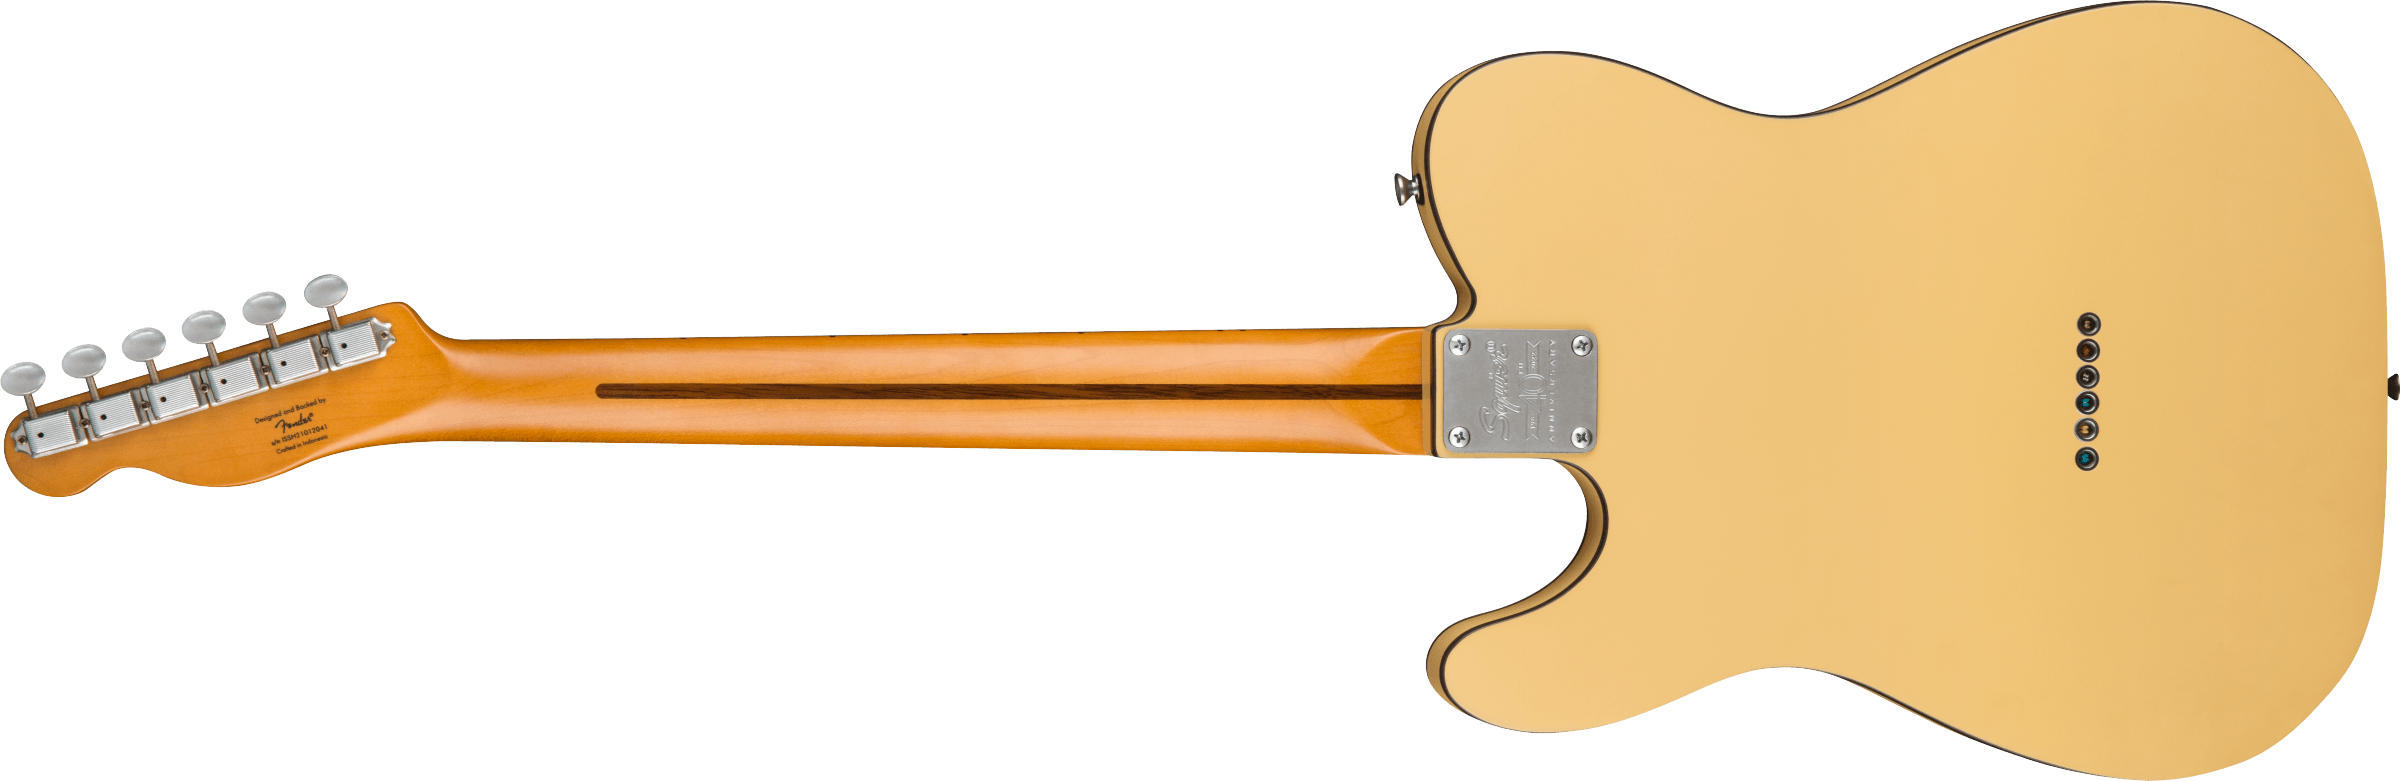 Squier Tele 40th Anniversary Vintage Edition Mn - Satin Vintage Blonde - Guitarra eléctrica con forma de tel - Variation 1